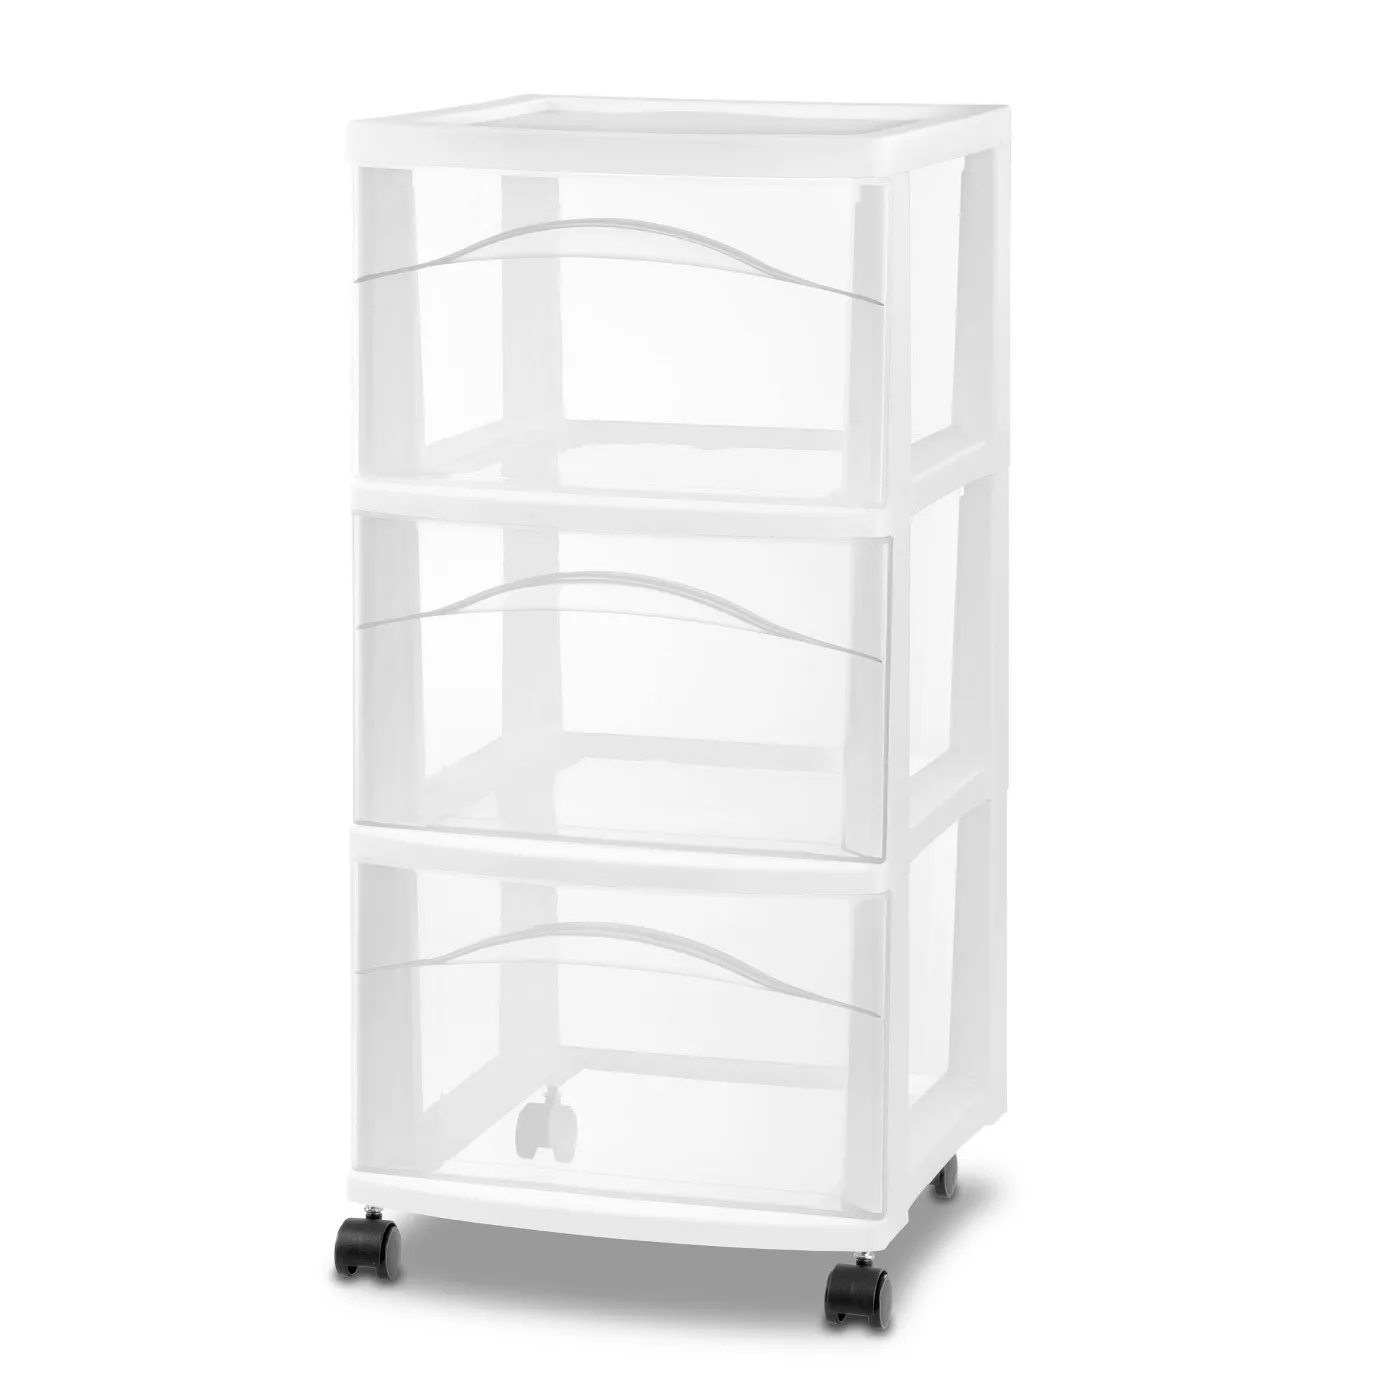 3 Drawer Medium Cart White - Room Essentials™ - image 1 of 3